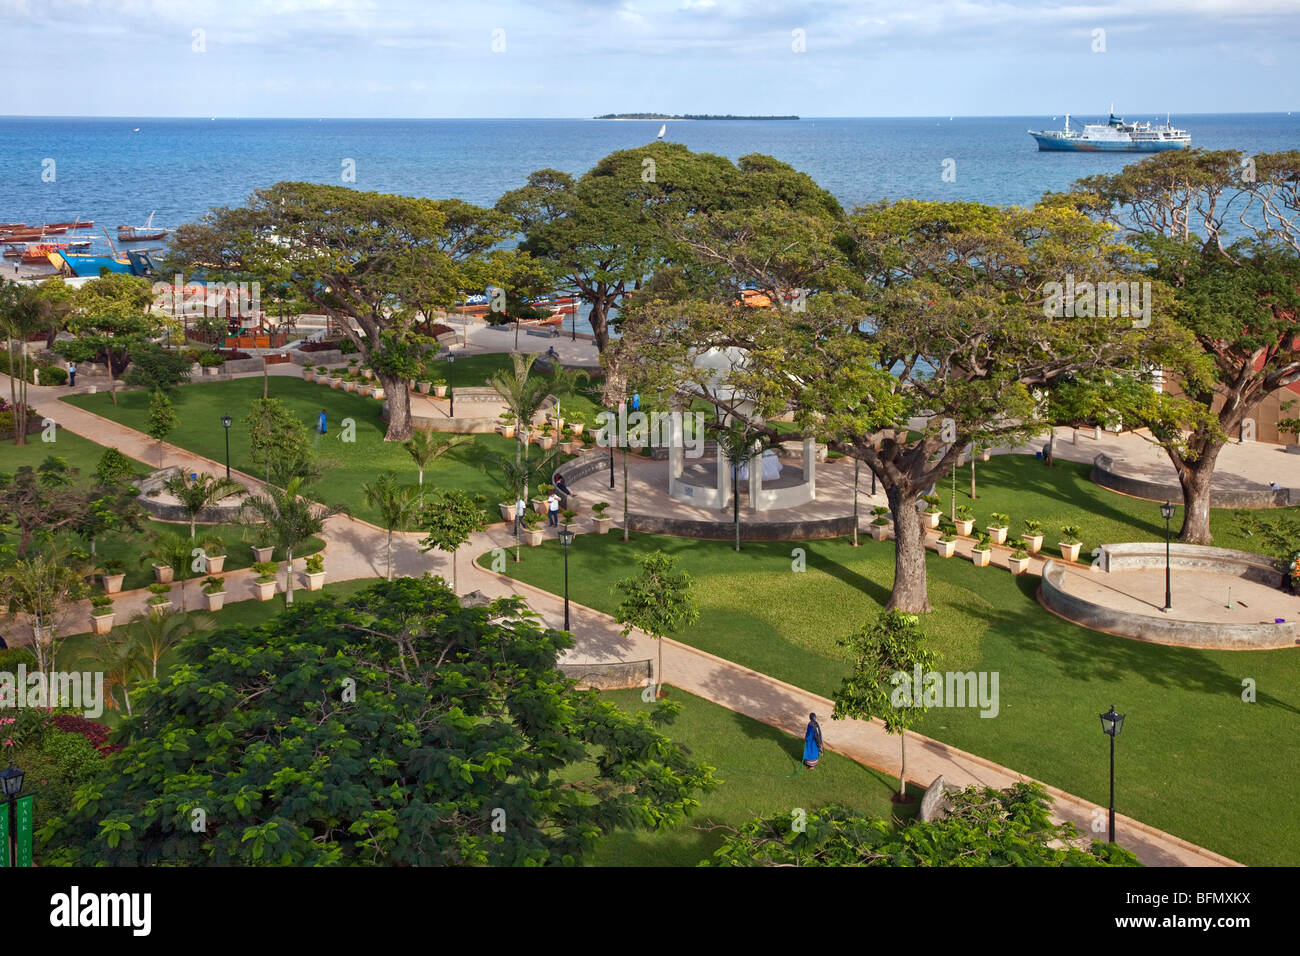 La Tanzanie, Zanzibar, Stone Town. L'attrayant Forodhani Gardens grace le front en face de Beit al-ajaib, House of Wonders Banque D'Images